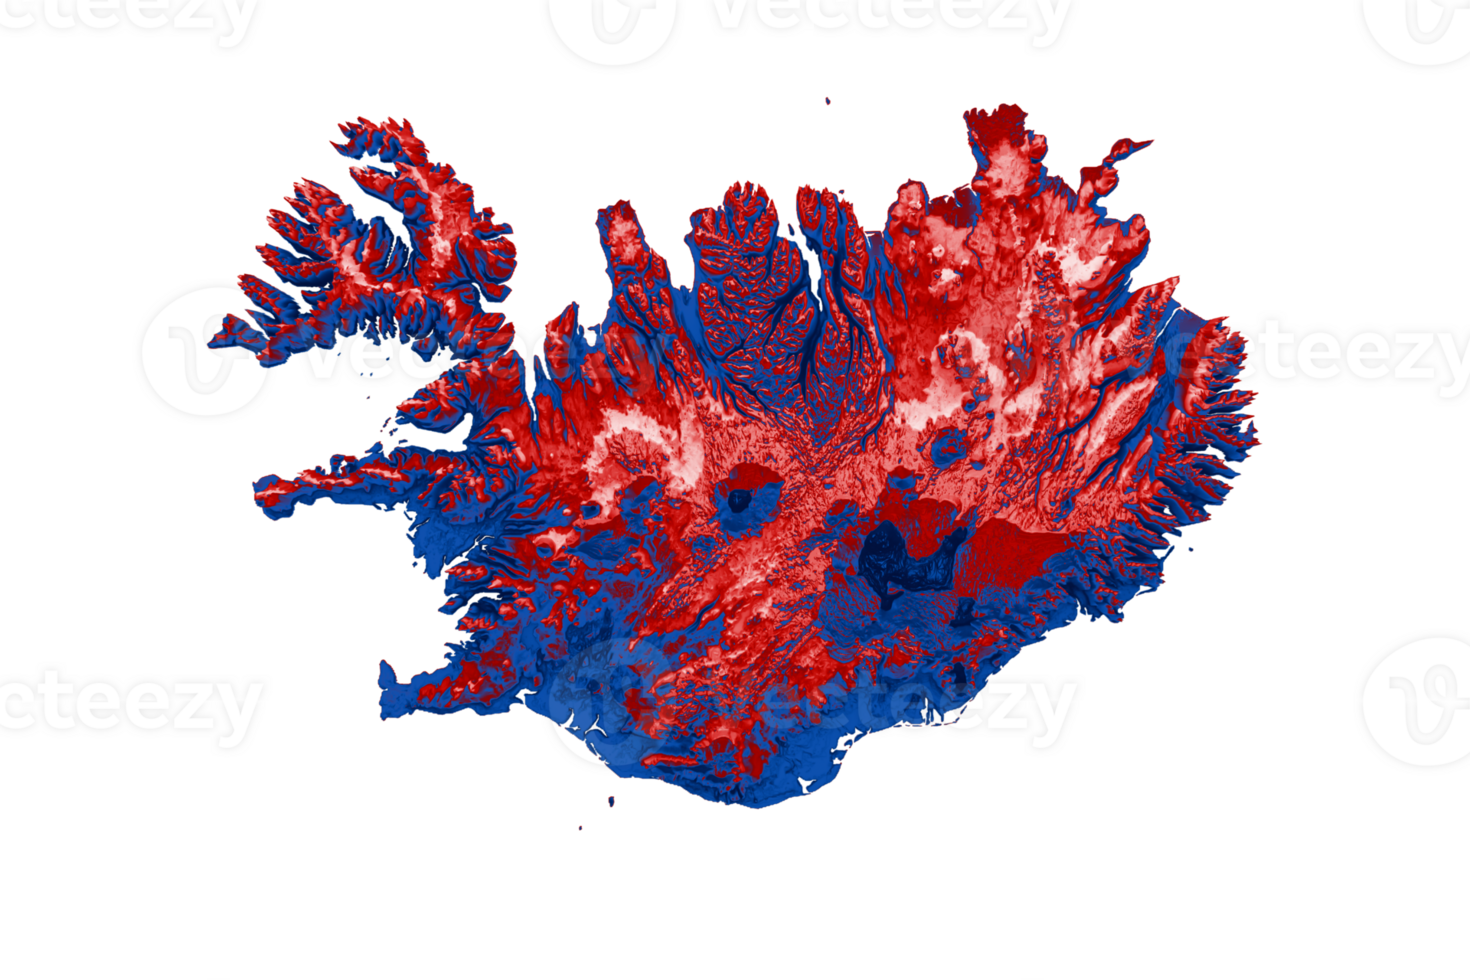 island karte mit den flaggenfarben rot und blau schattierte reliefkarte 3d illustration png